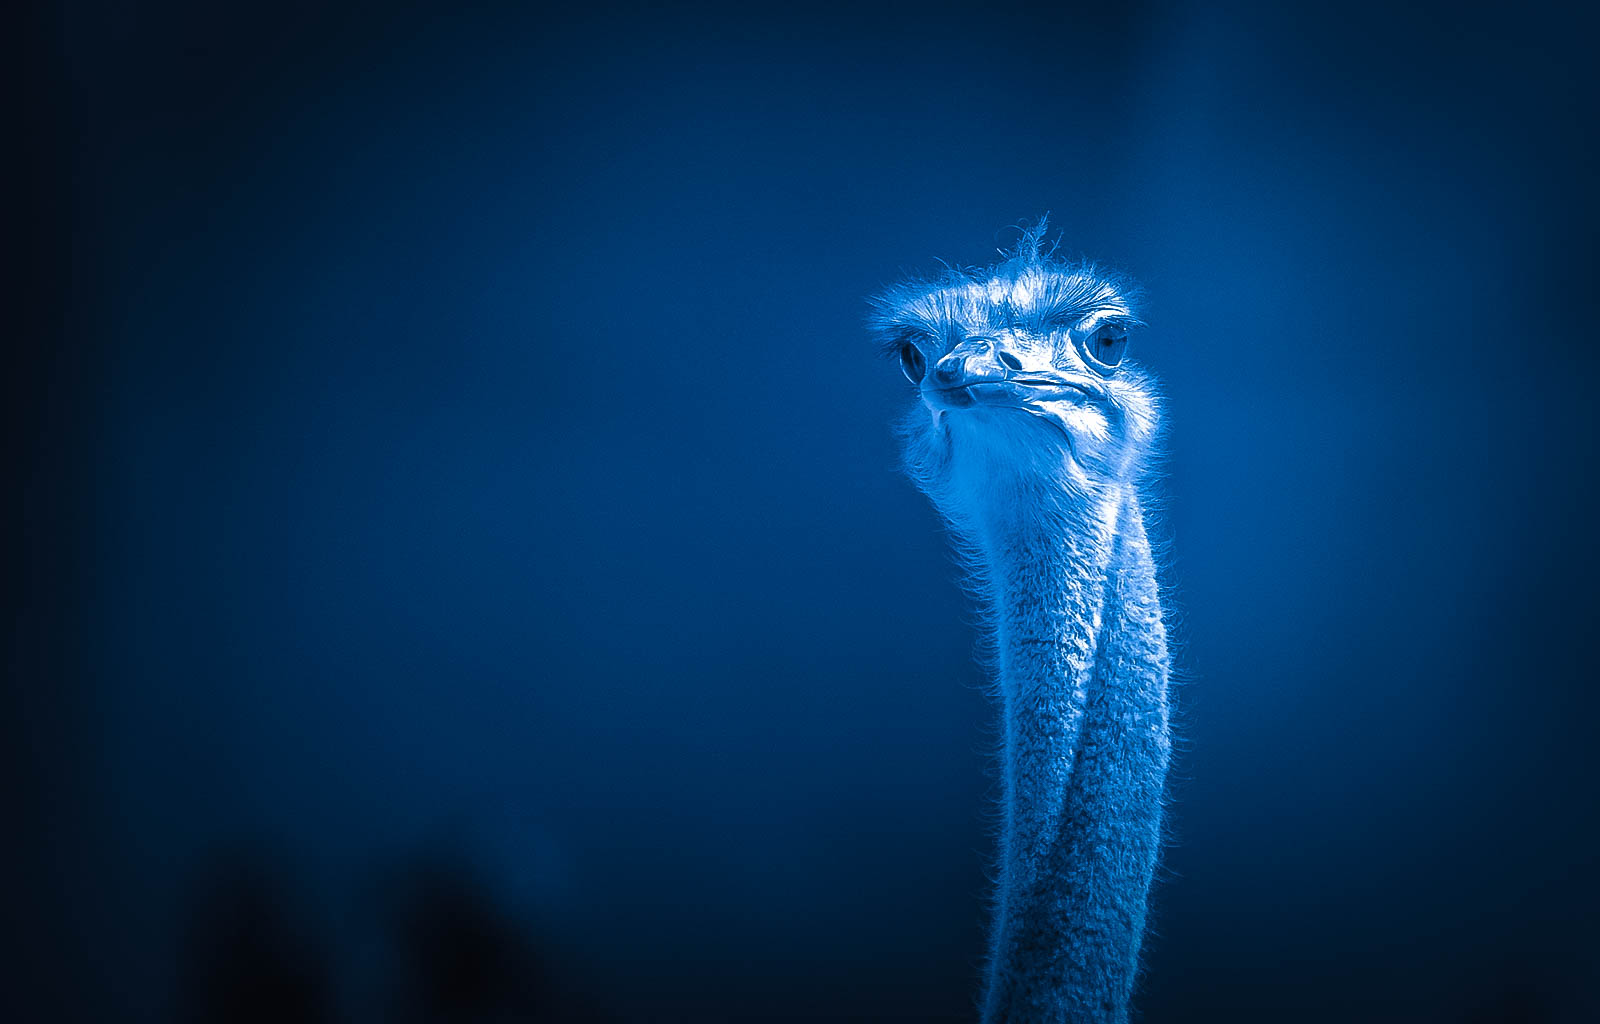 Electric ostrich